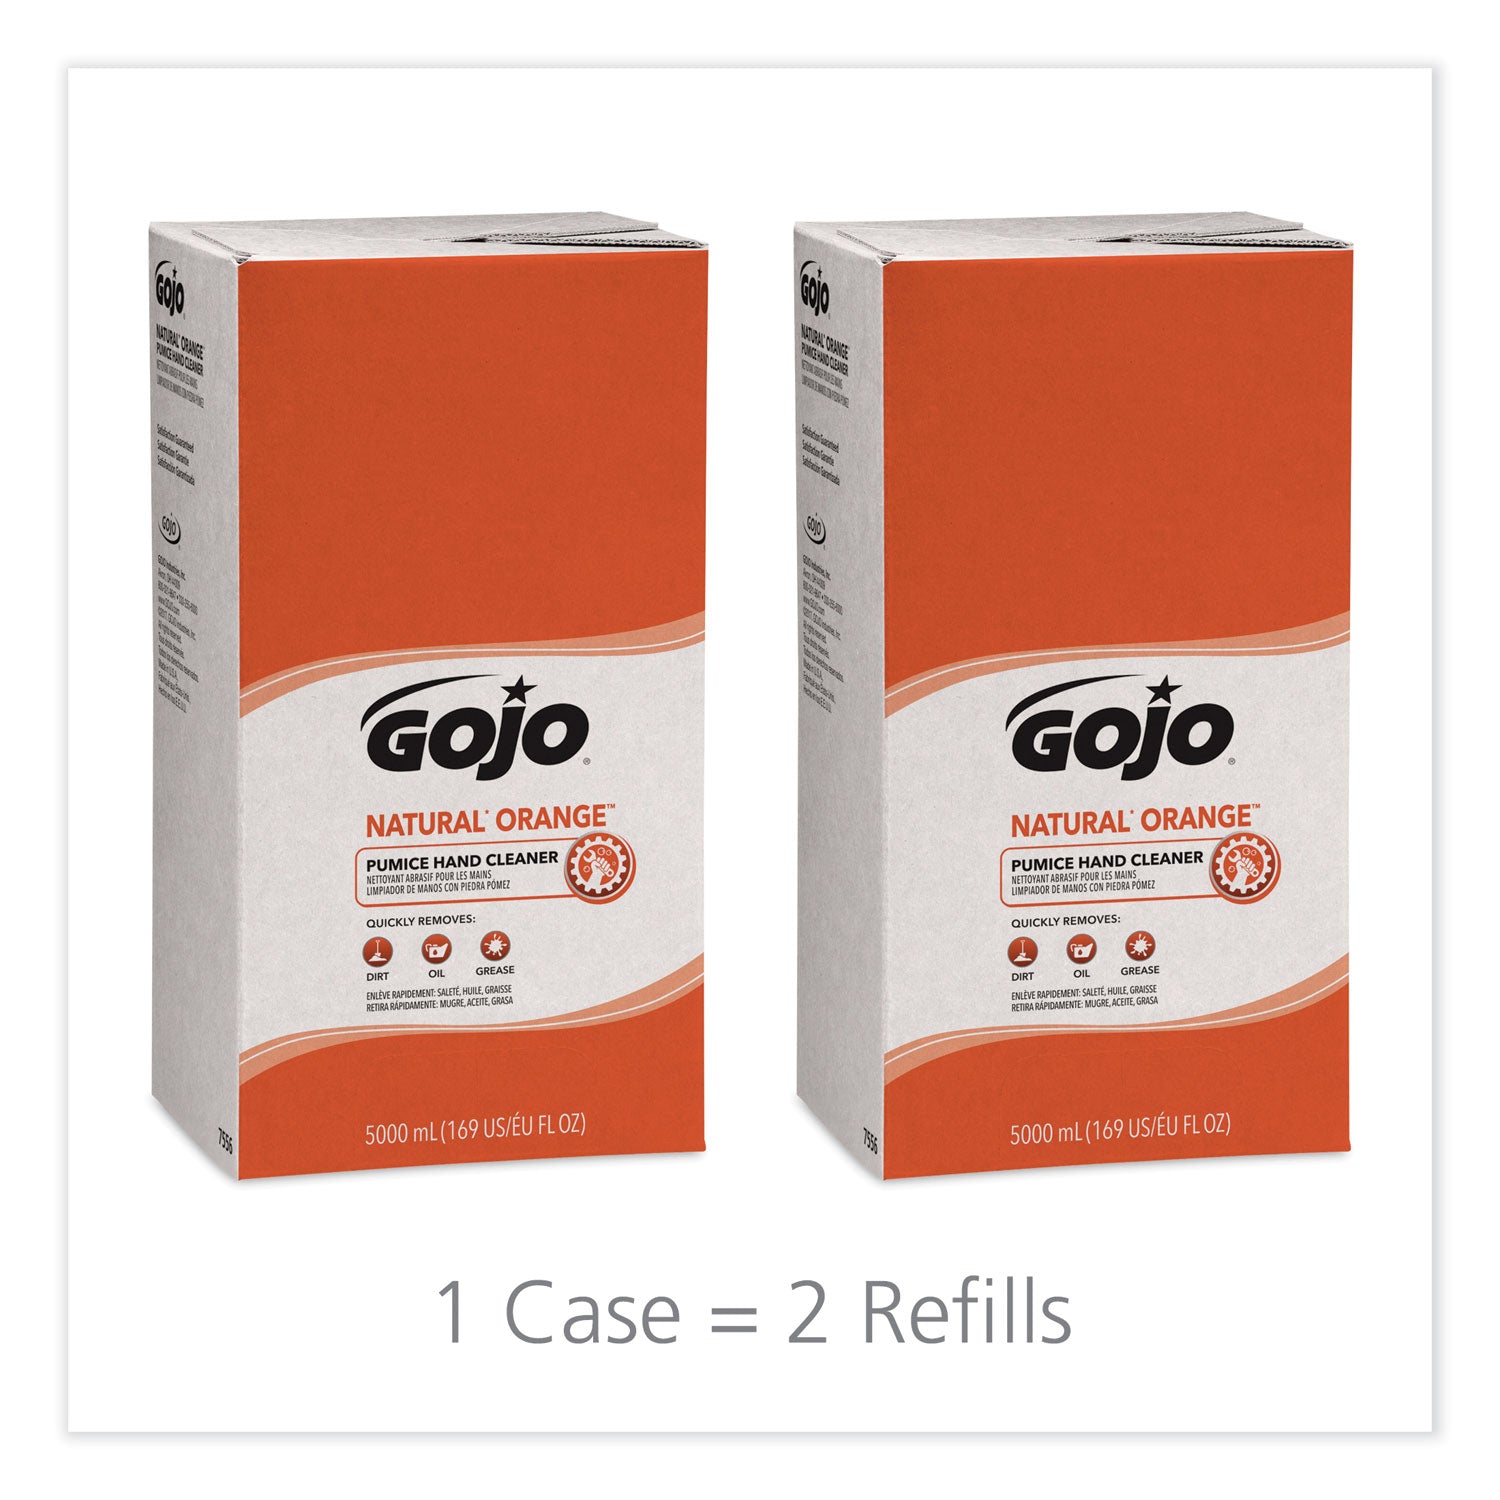 natural-orange-pumice-hand-cleaner-refill-citrus-scent-5000-ml-2-carton_goj7556 - 2